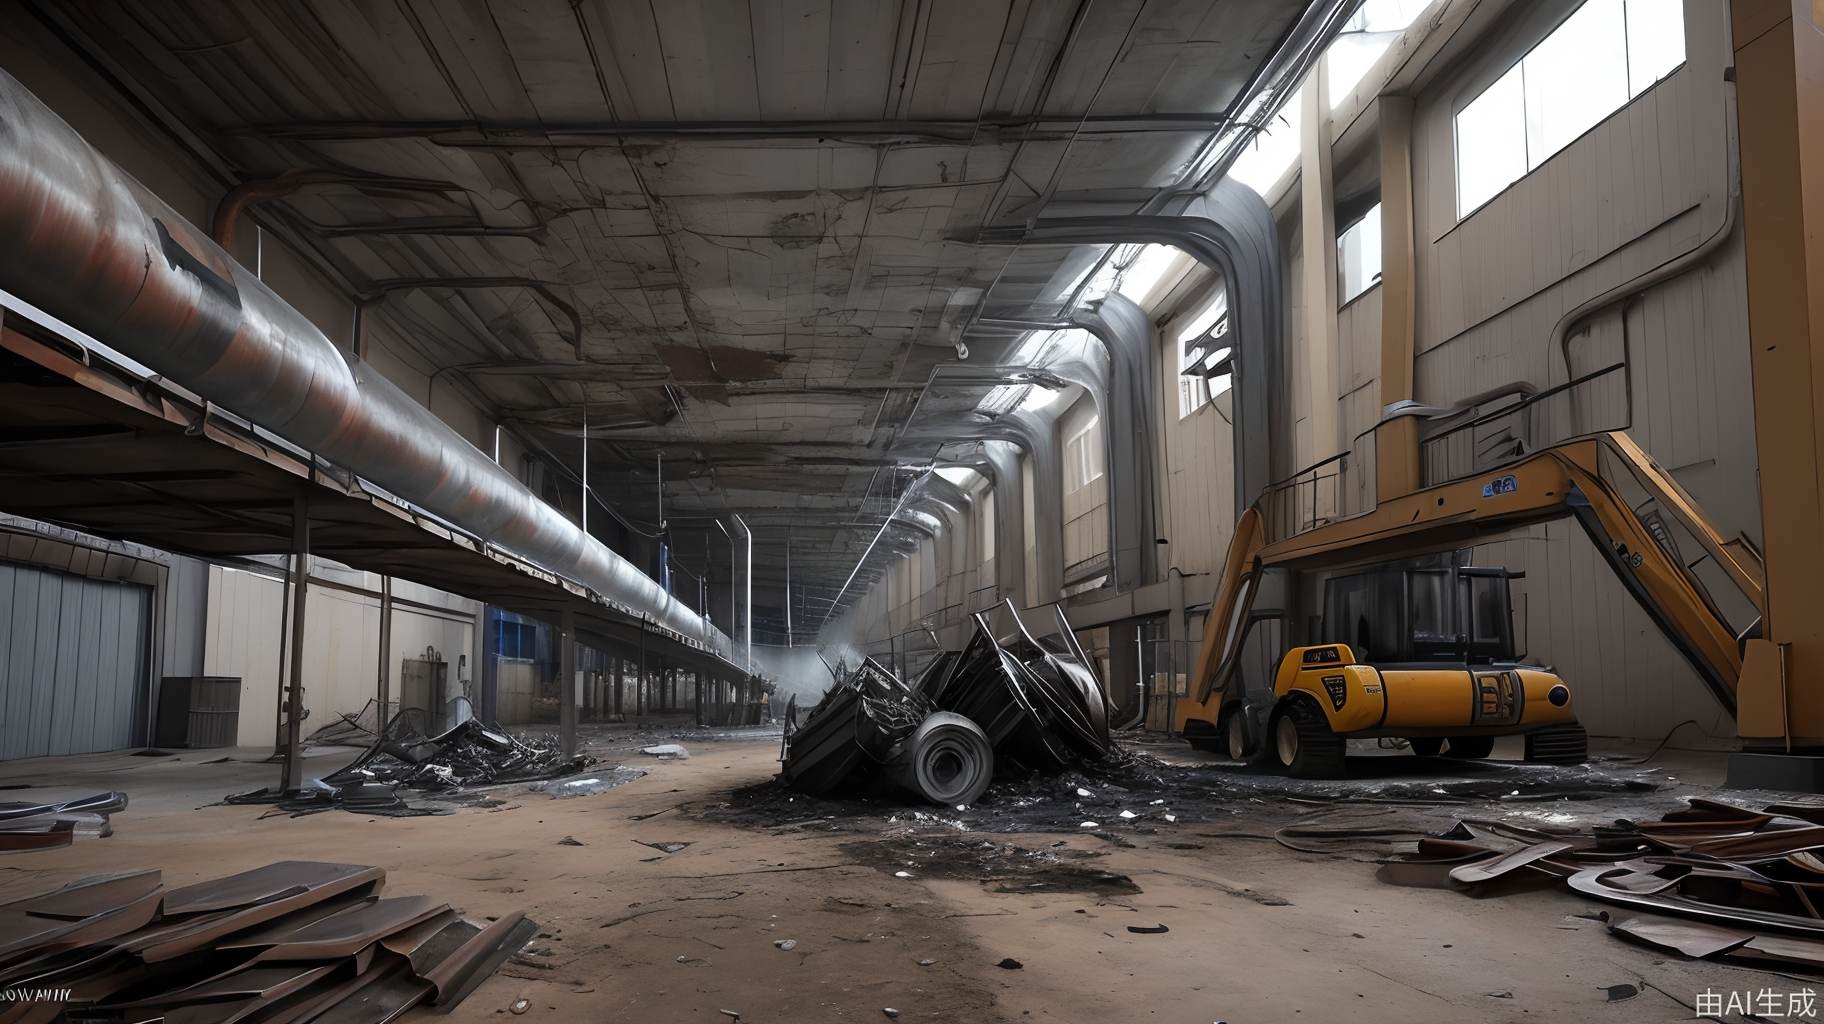 堆满废铁的废弃焊接厂混乱不堪，无人看管。